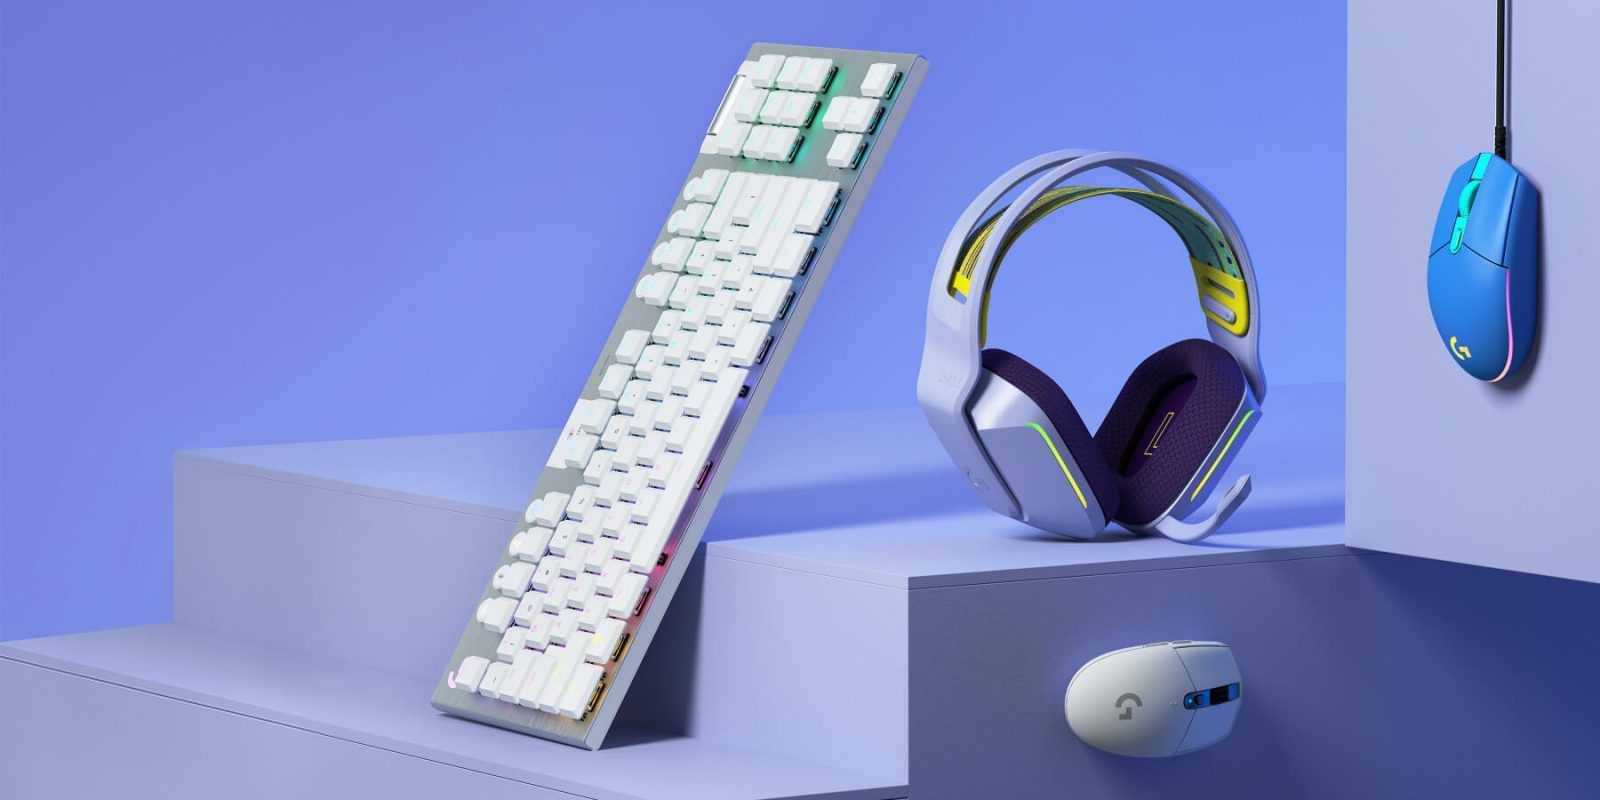 Papildus austiņām var iegādāties peli ar vadu G102, kā arī bezvadu variantu G305 LightSpeed un kompaktu bezvadu klaviatūru G915 TKL par $229.